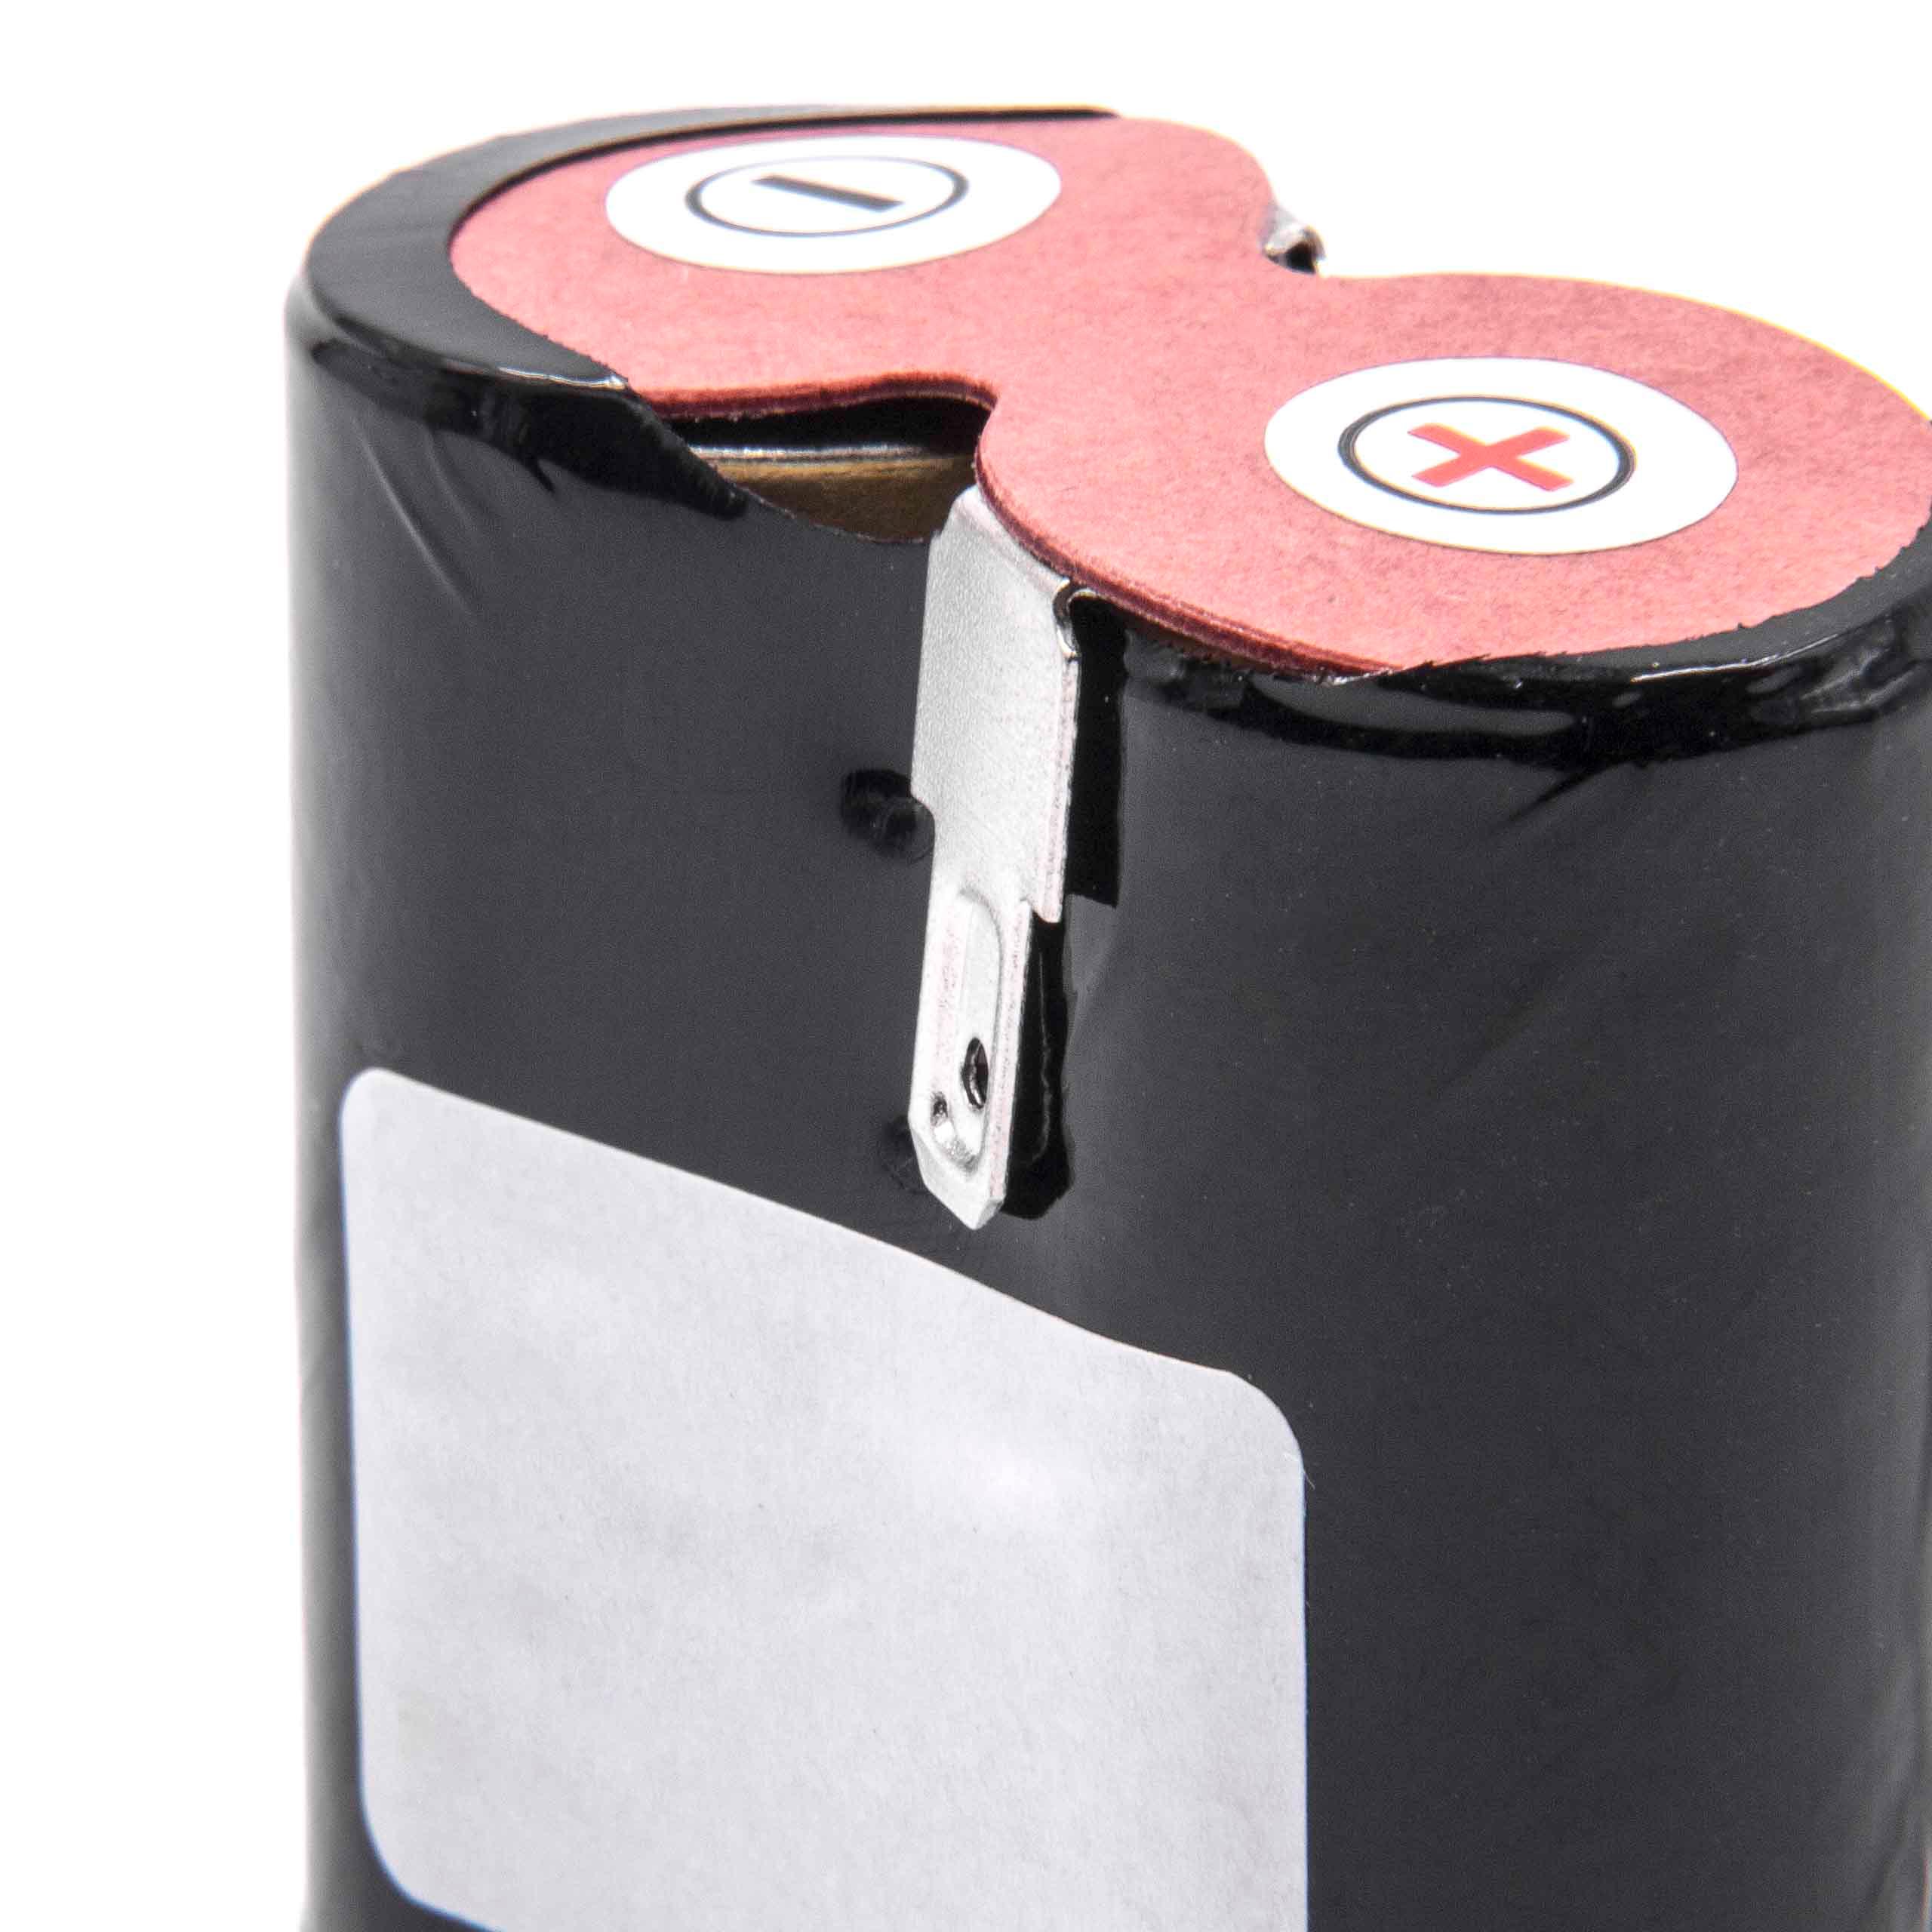 Batterie remplace Black & Decker 520102 pour robot aspirateur - 3000mAh 2,4V NiMH